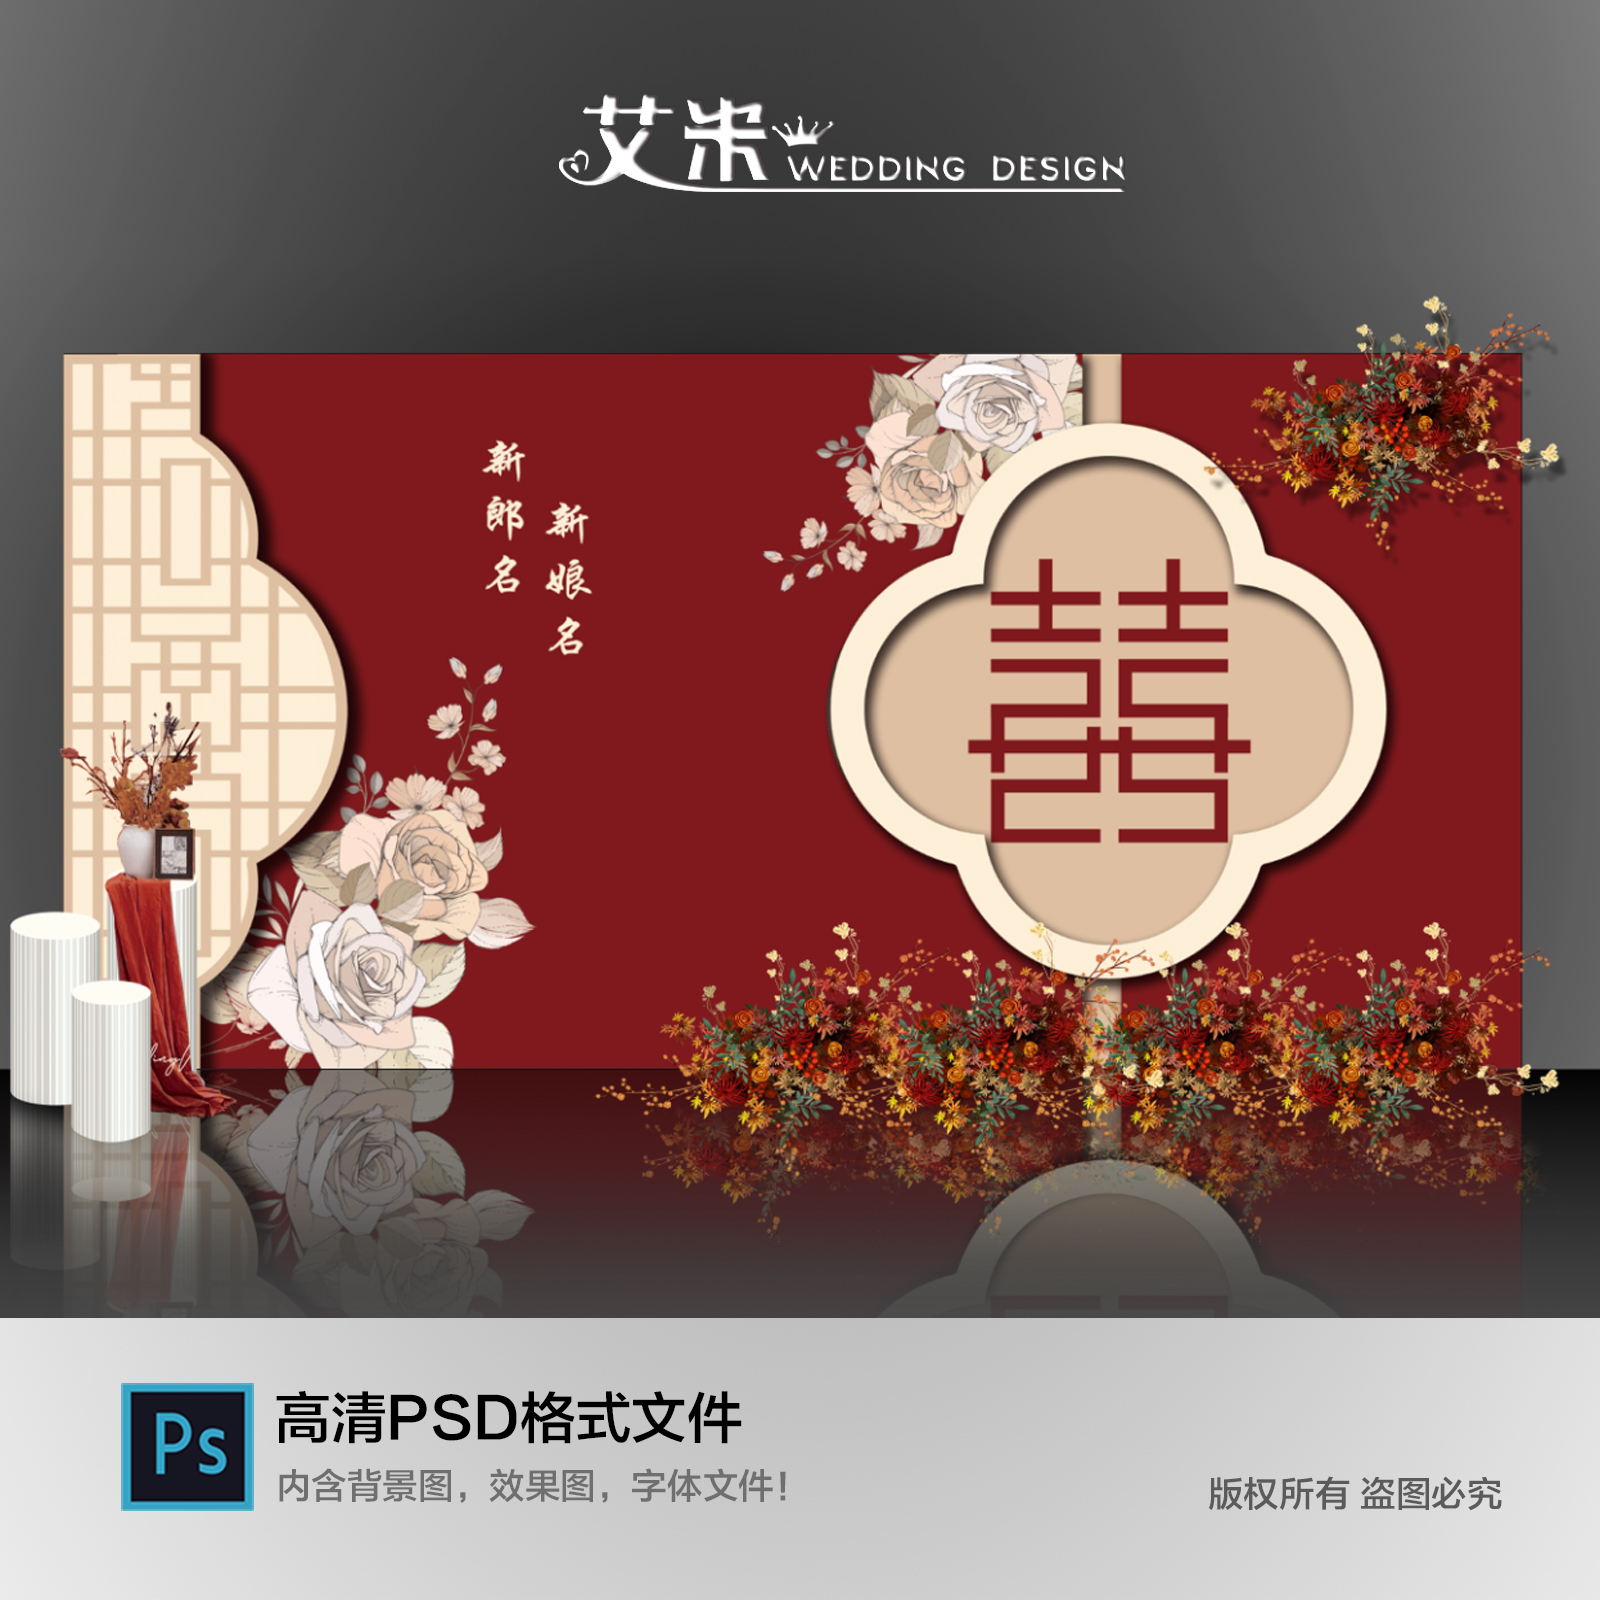 红色新中式中国风婚礼背景墙设计迎宾签到订婚宴效果图素材PSD